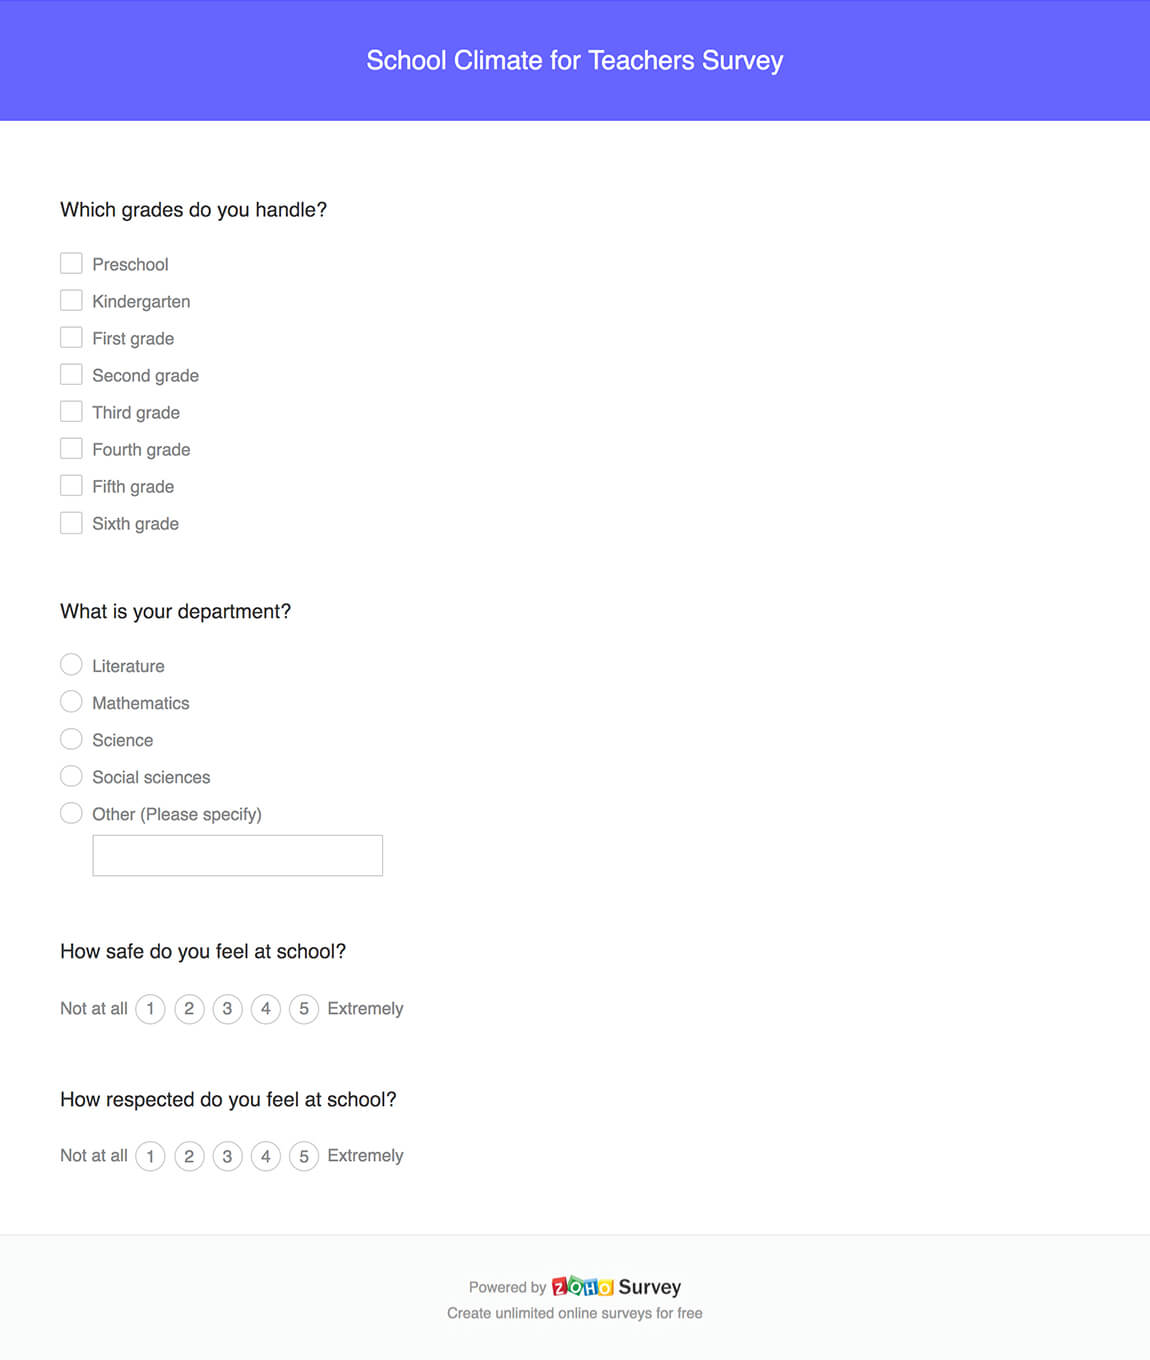 School climate for teachers survey questionnaire template